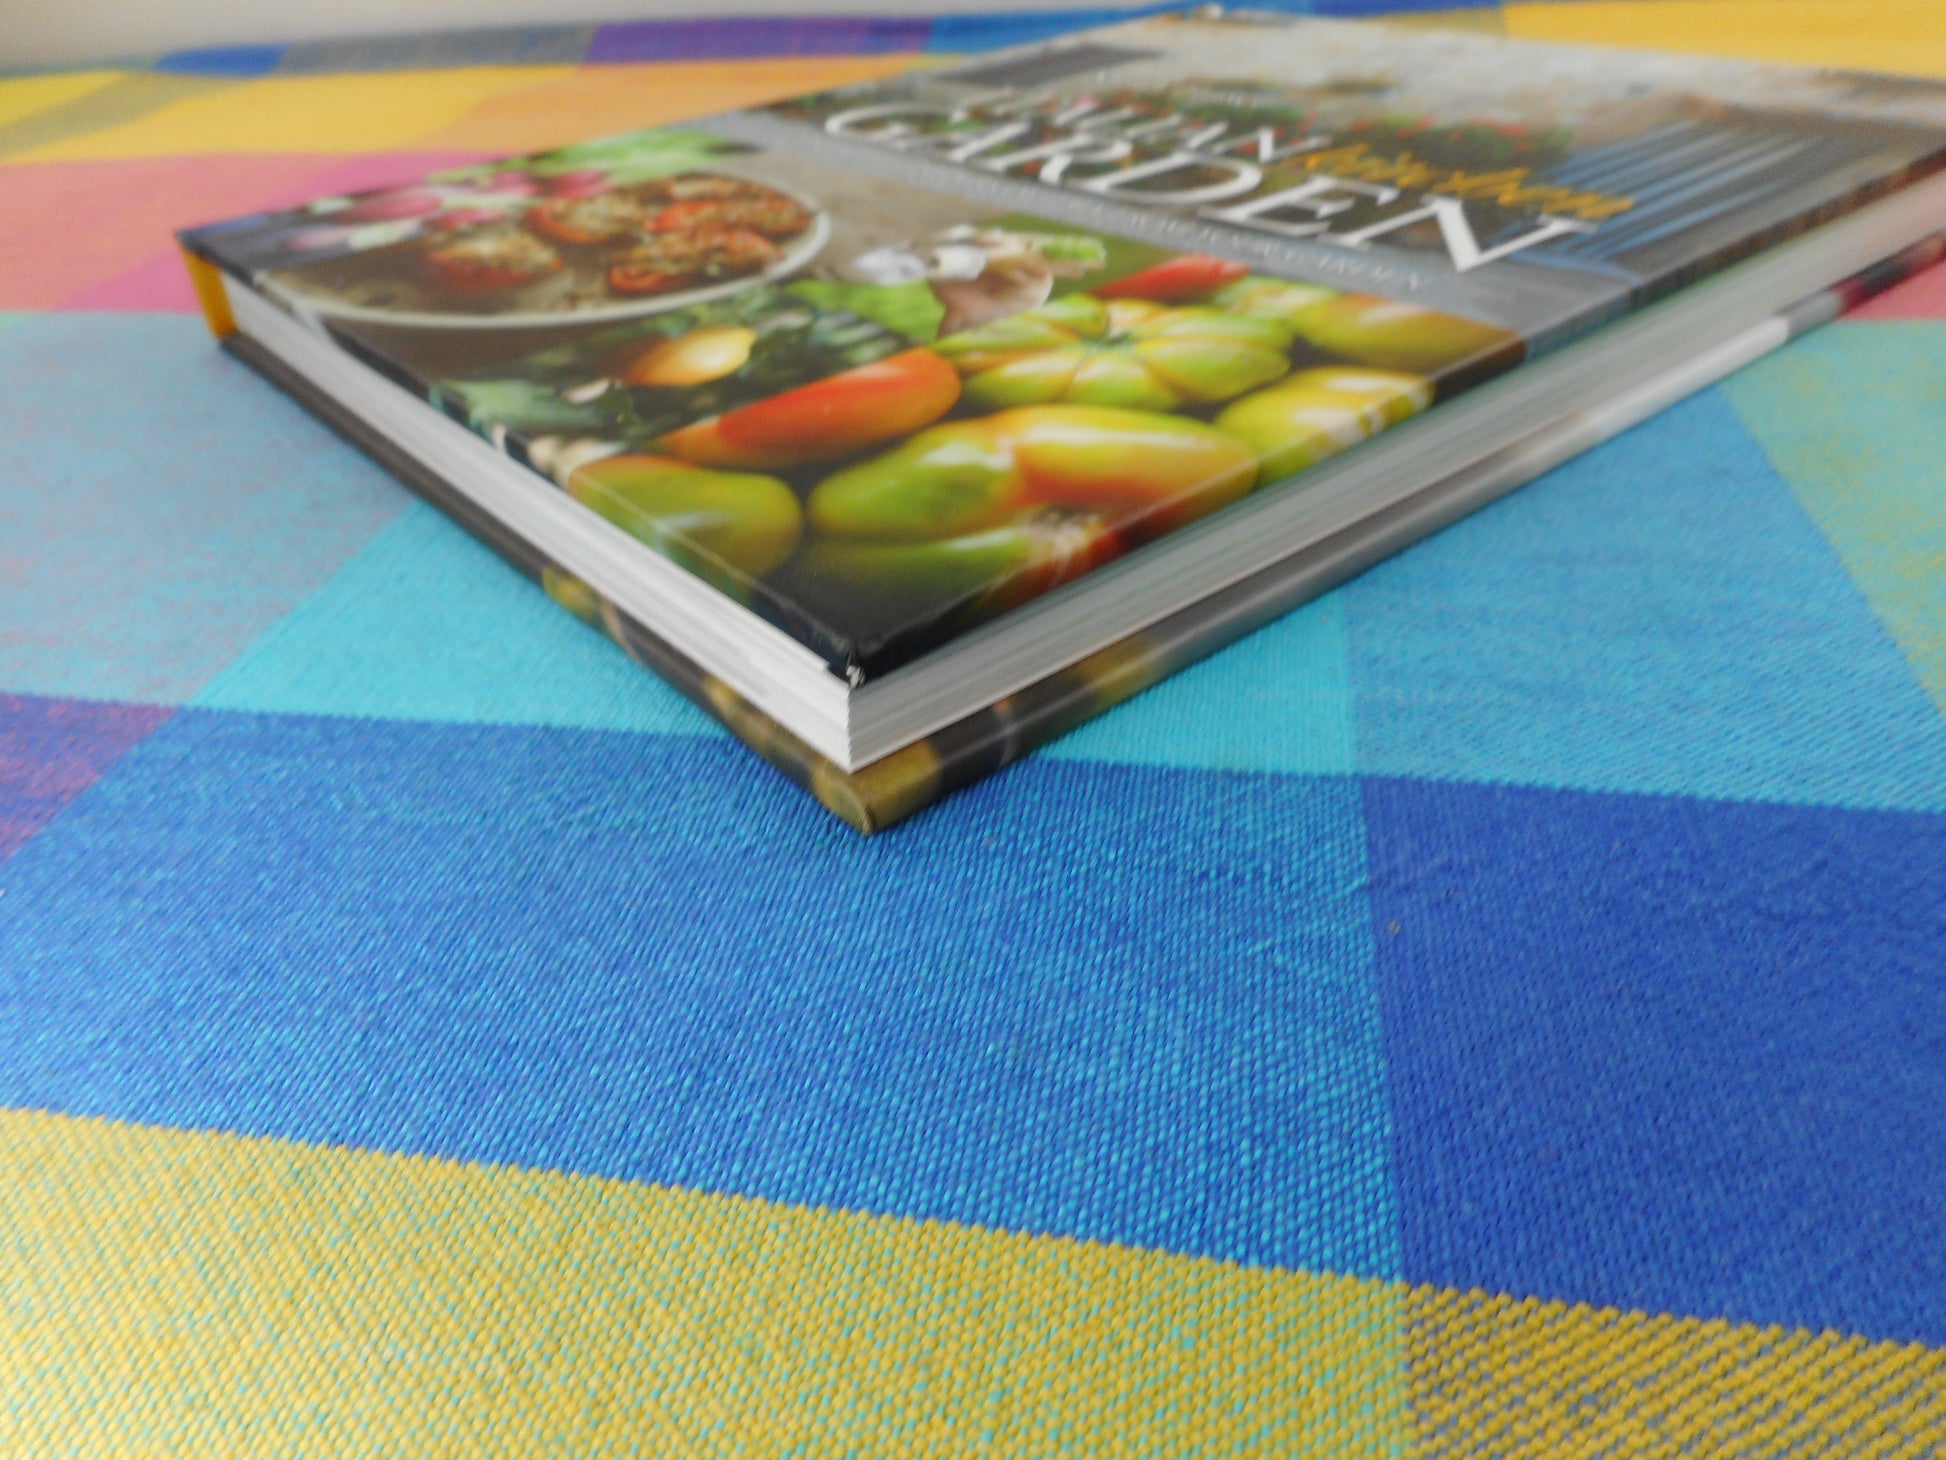 Italian Kitchen Garden Book 2011 Sarah Fraser Cookbook NOS